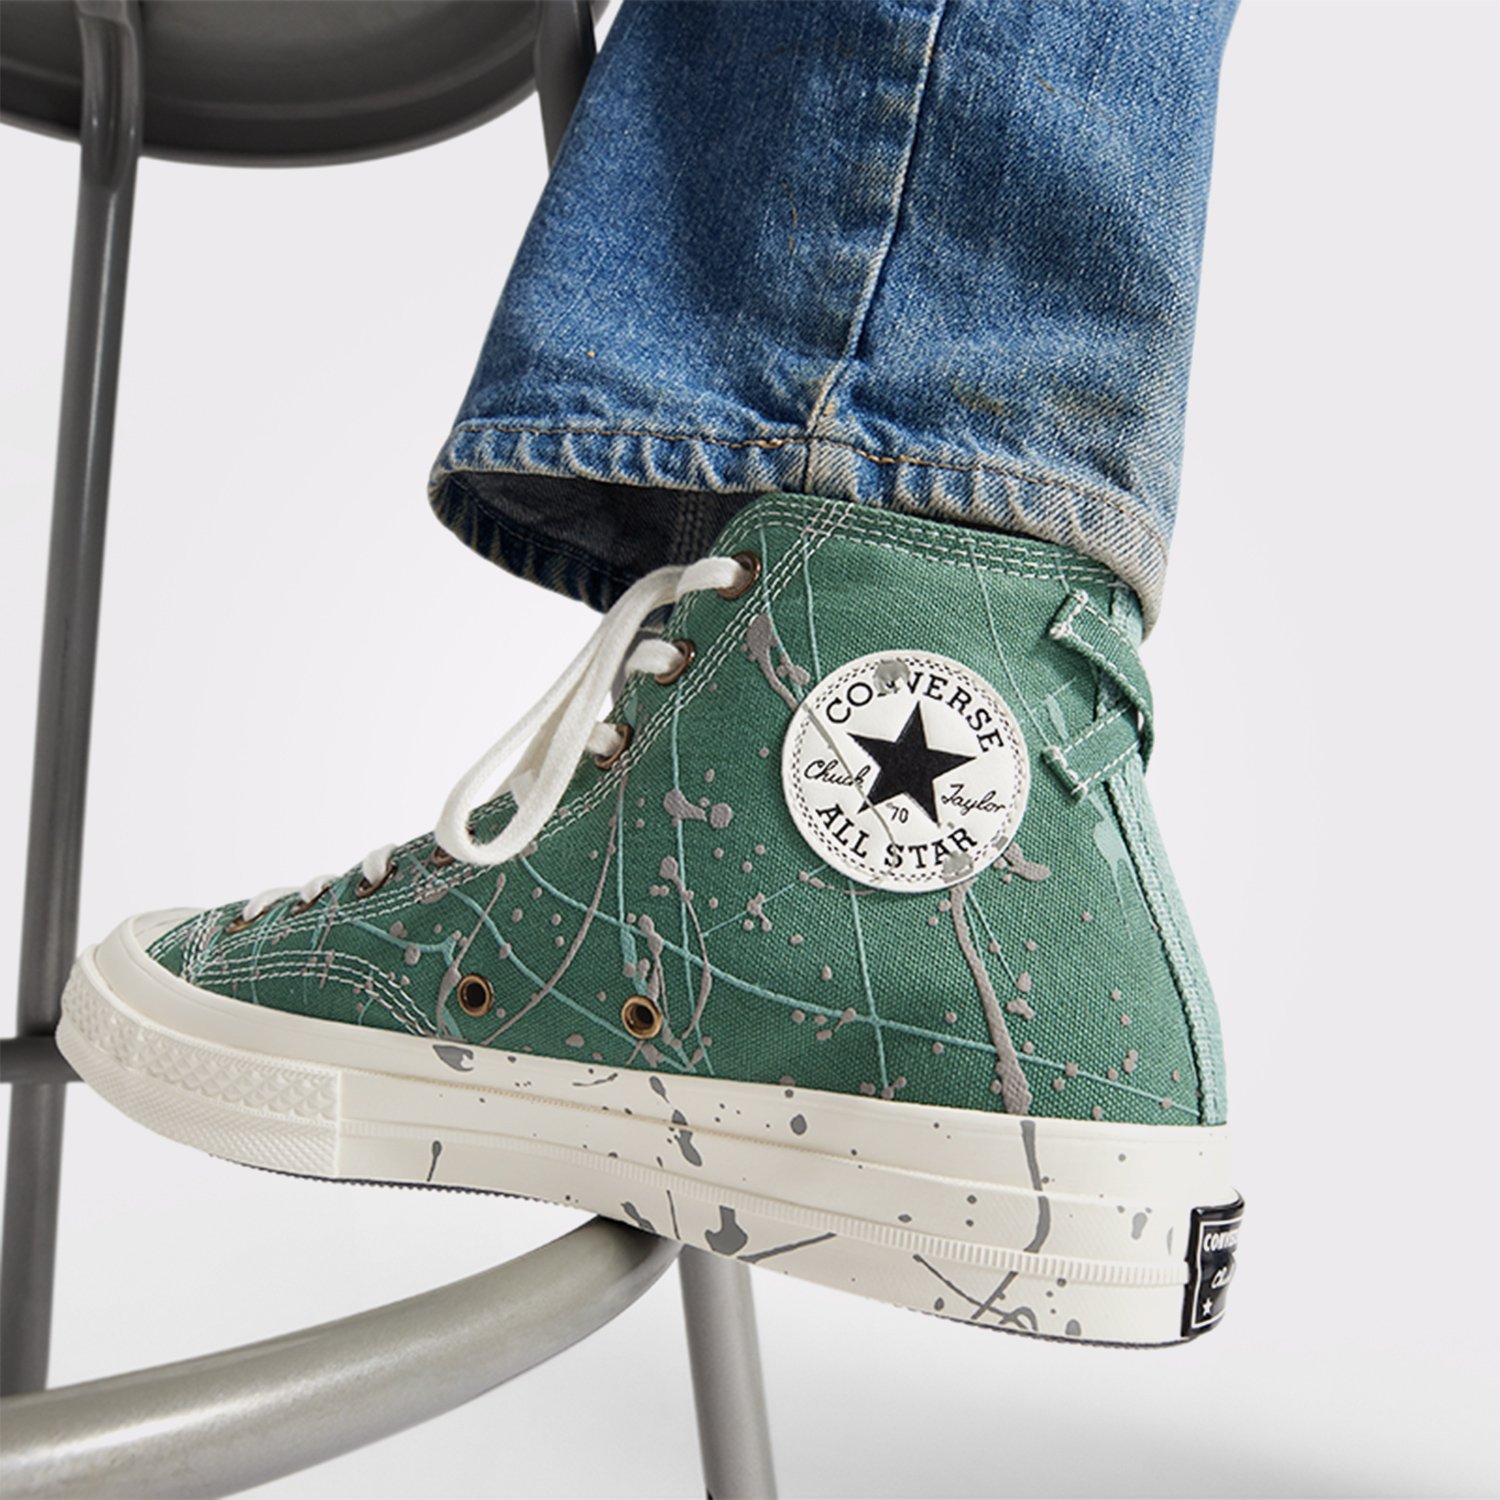 Converse Chuck 70 Paint Splatter Unisex Yeşil Sneaker